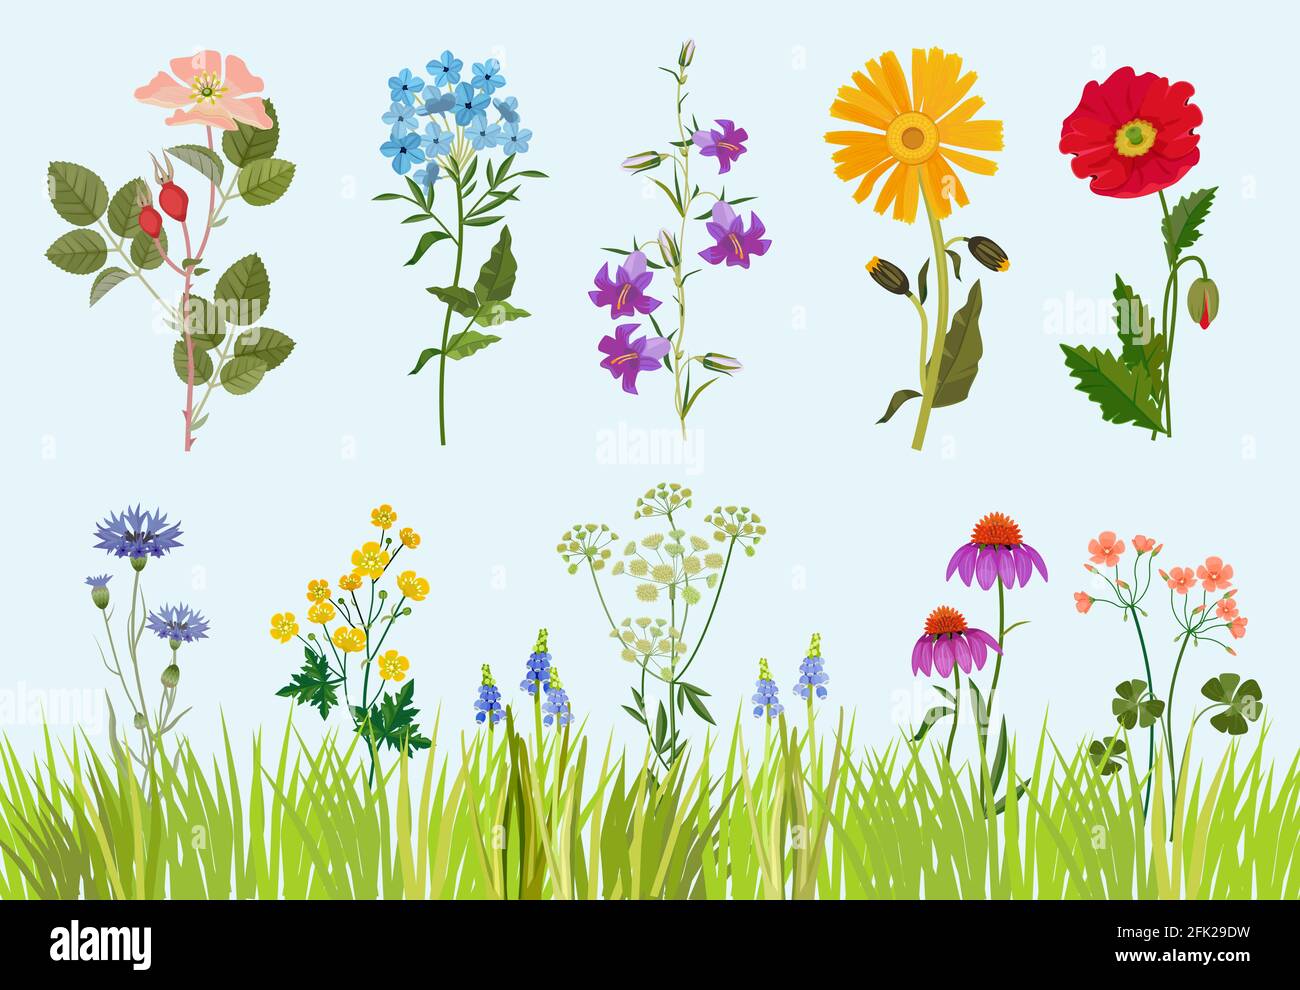 Collection de fleurs. Dessin vectoriel de prairie de plantes sauvages botaniques de style dessin animé Illustration de Vecteur